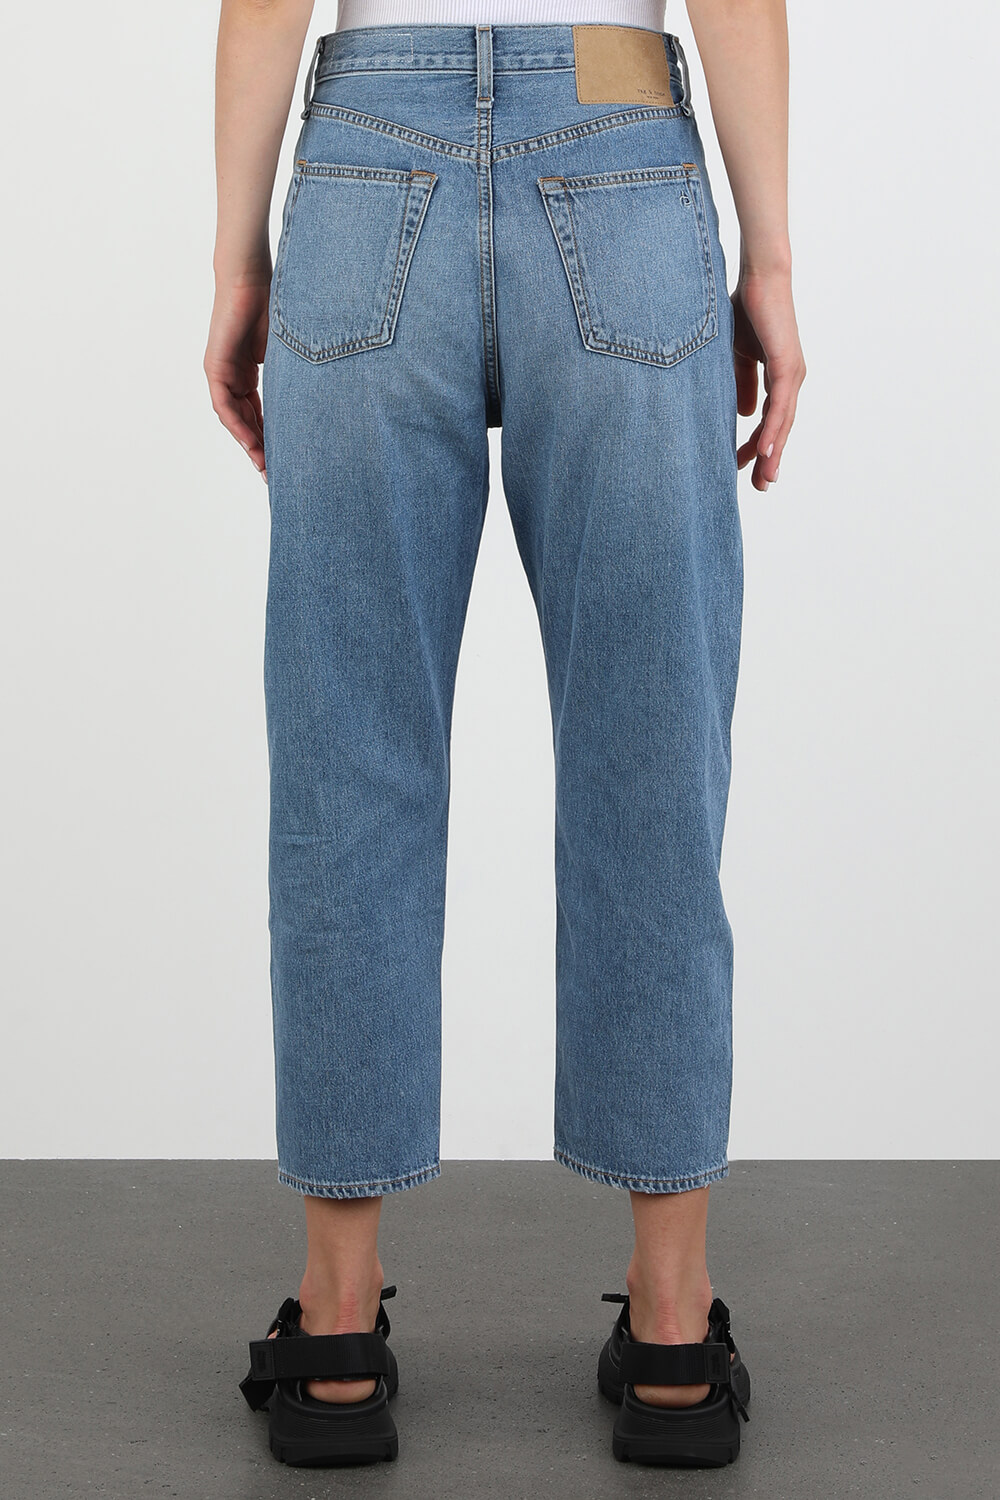 מכנסי ג'ינס היי רייס שנות ה-90 כחולים RAG & BONE